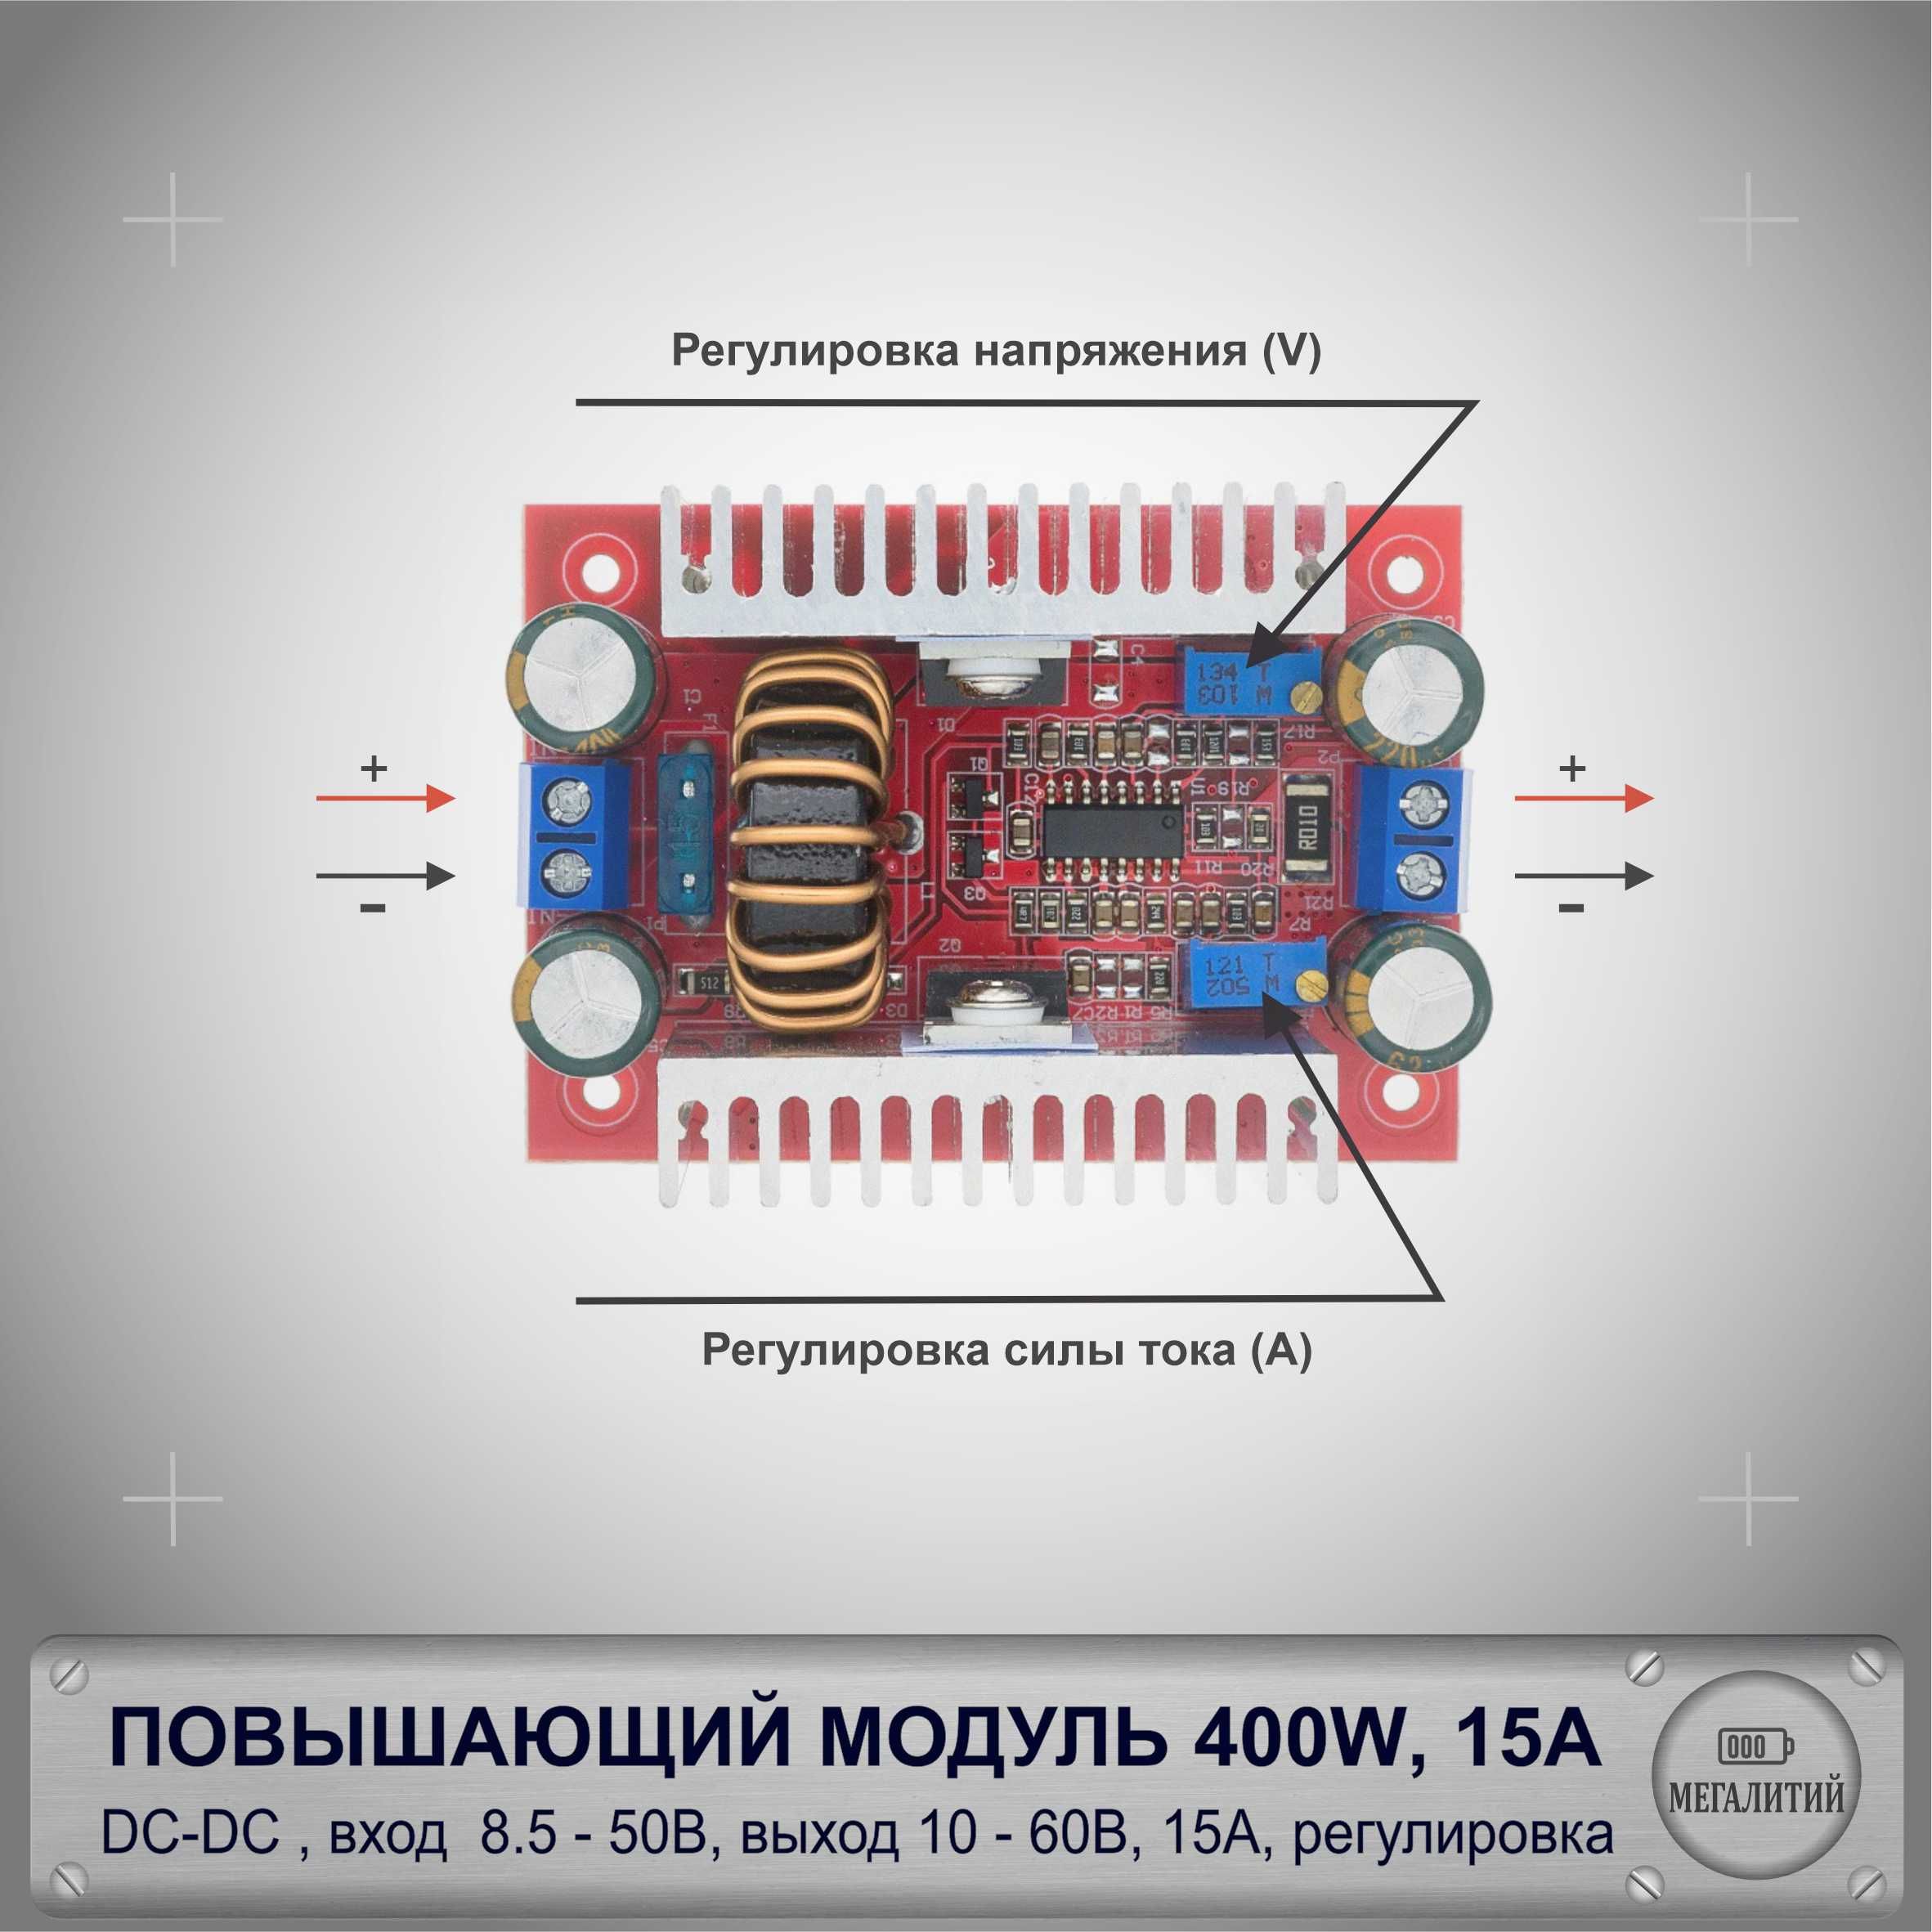 Мощныйповышающийпреобразователь/модуль400W15ADC-DC8.5-50Vto10-60V3A,вход8.5-50В,выход10-60В,срегулировкойвыходногонапряжения,67x48мм